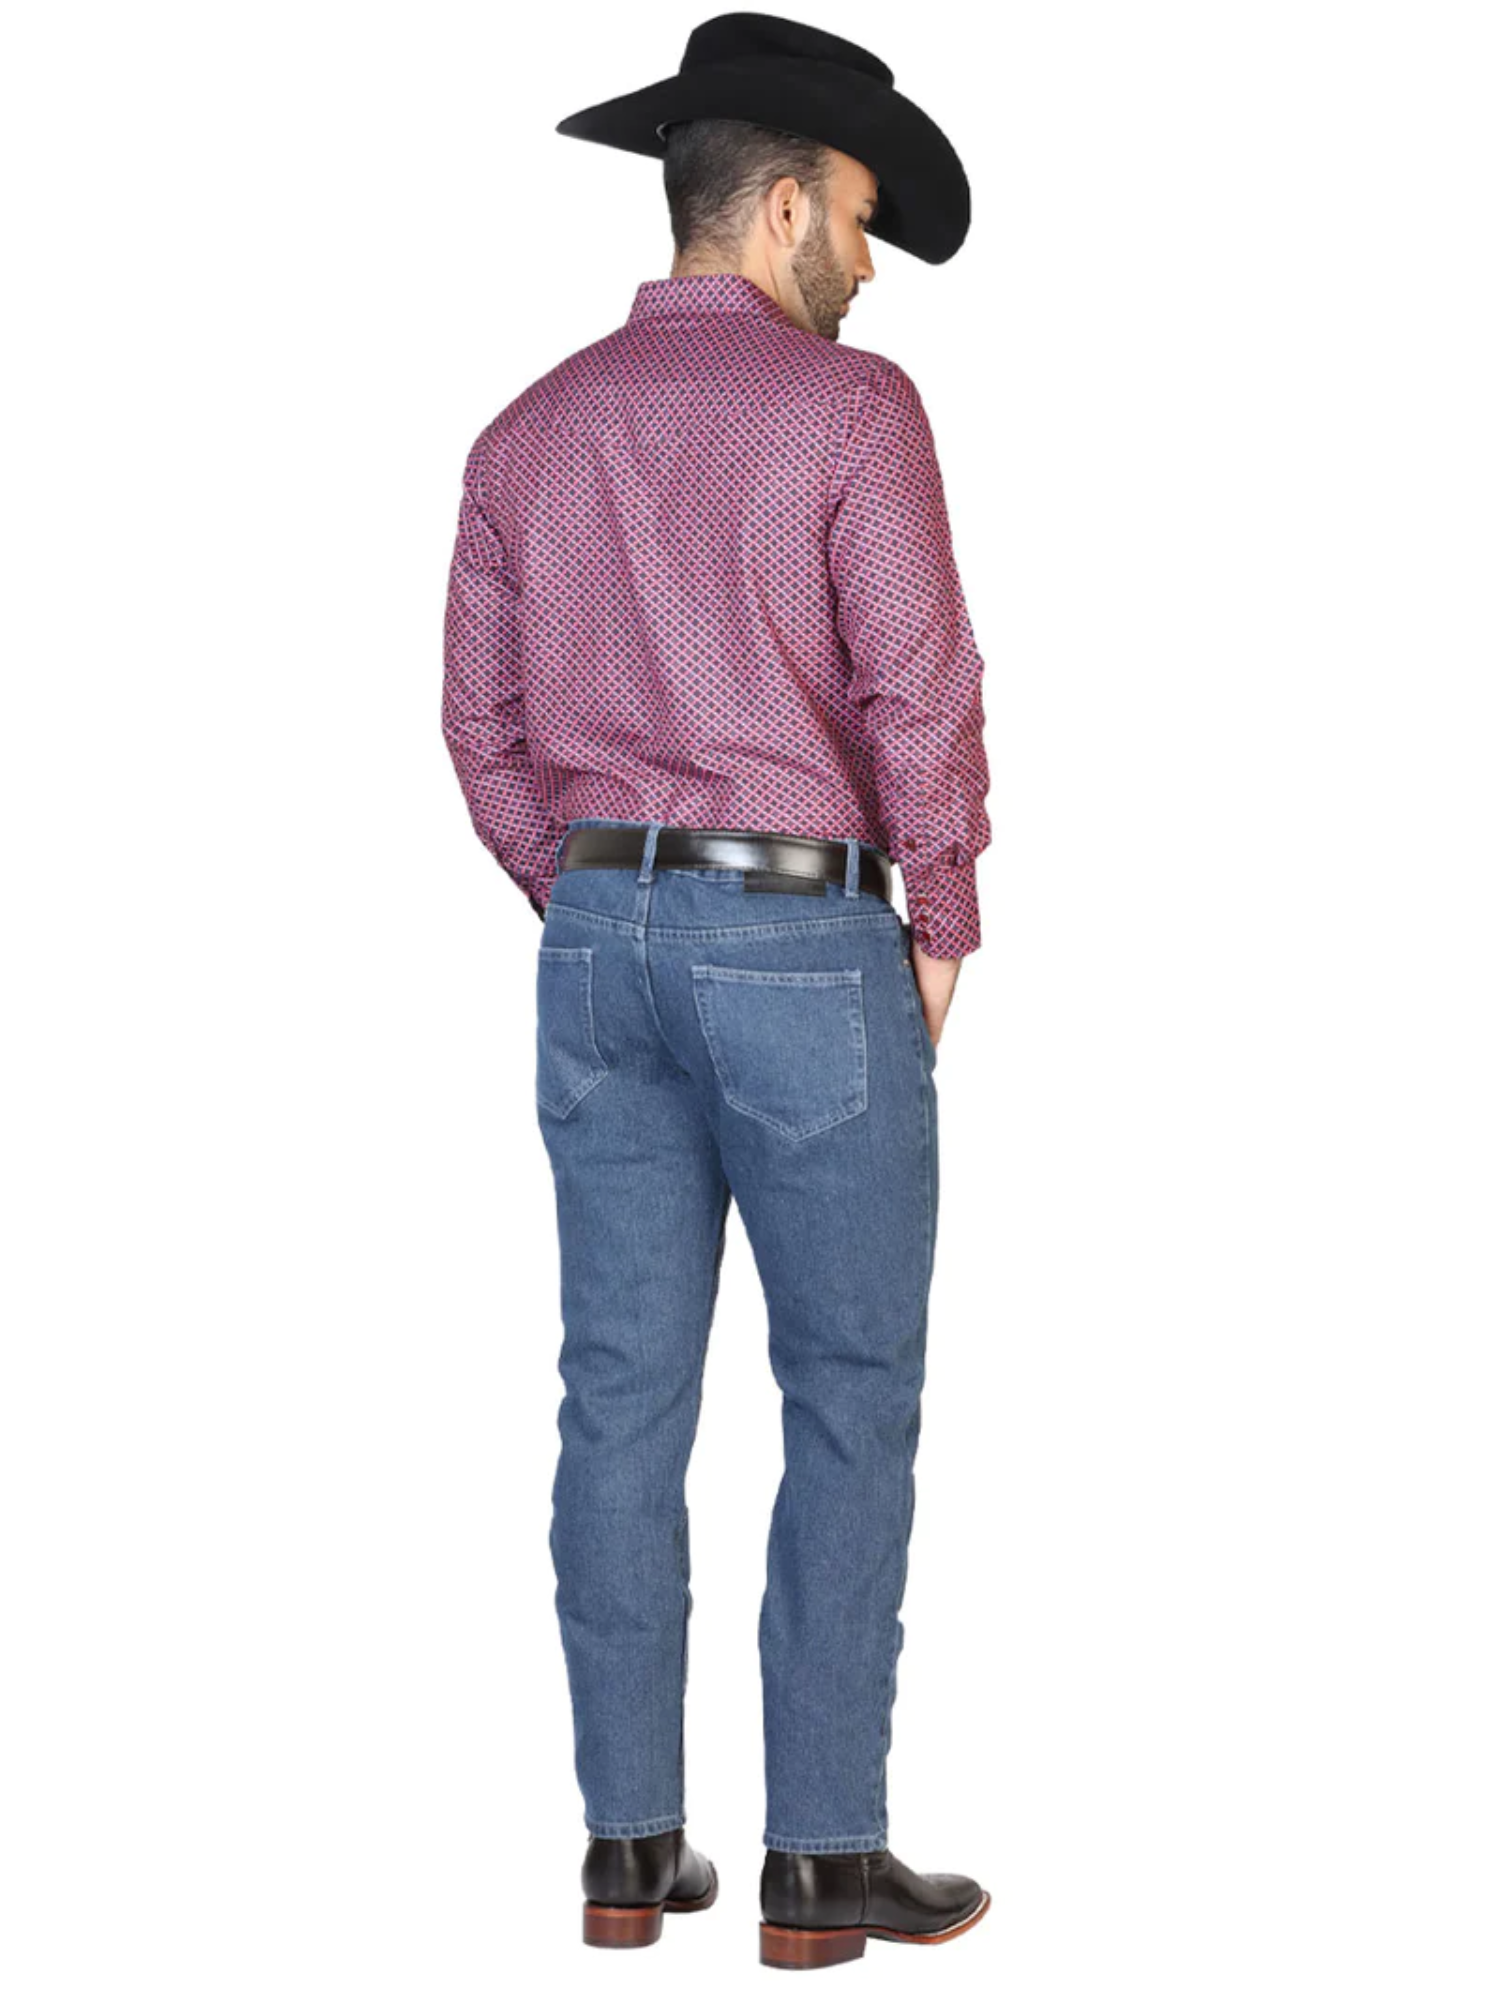 Pantalon de Mezclilla Casual Azul Claro para Hombre 'El General' - ID: 41331 Denim Jeans El General 